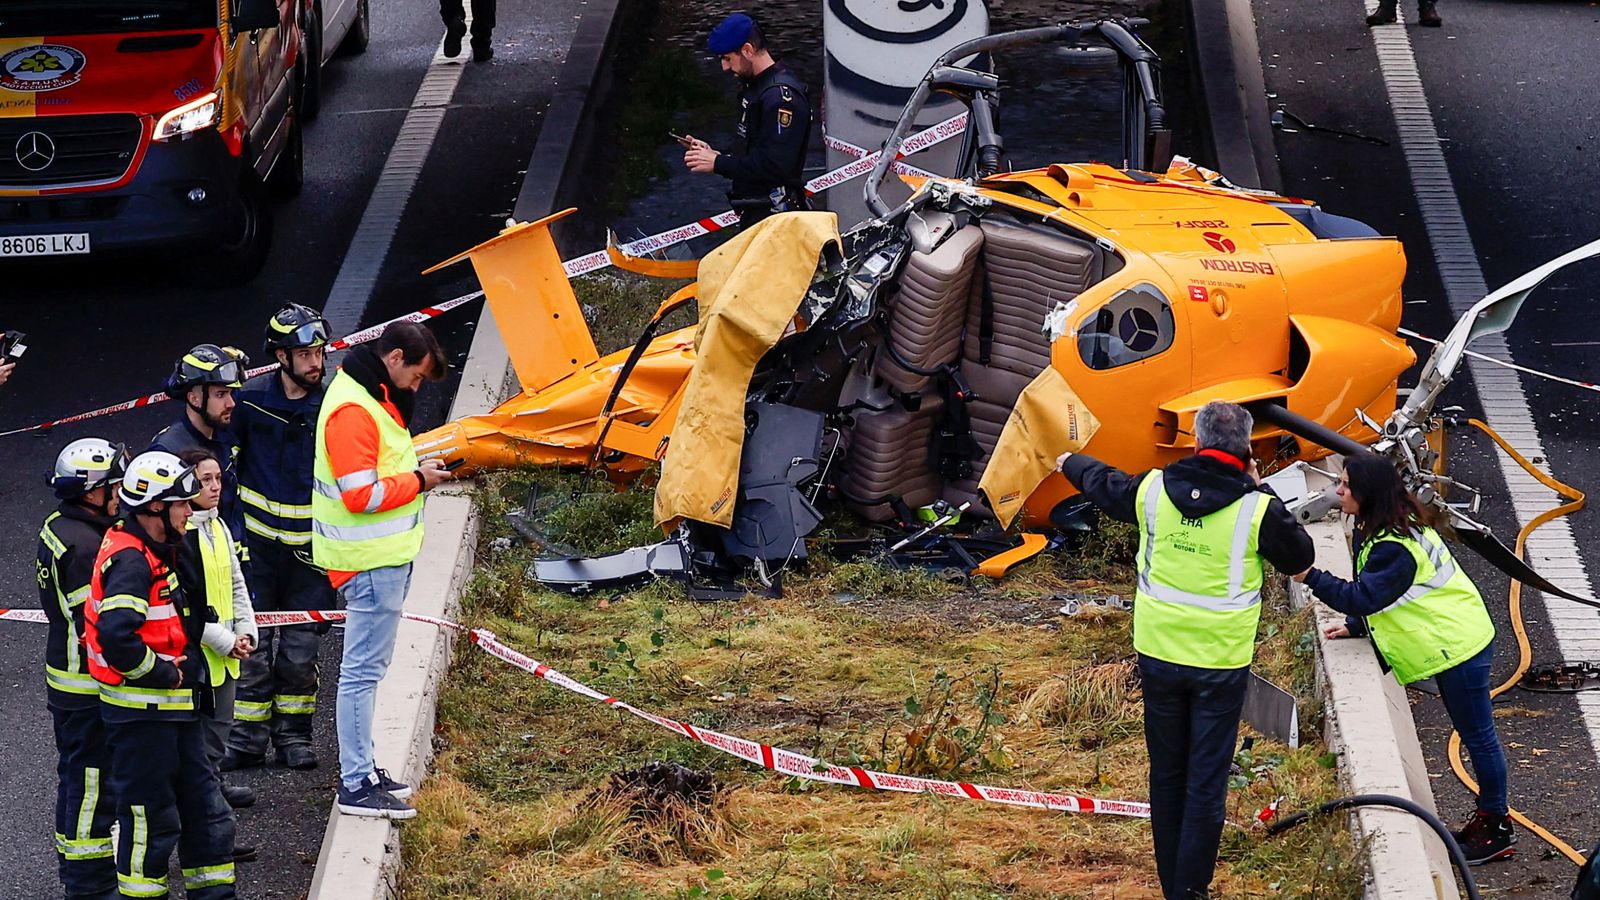 Madrid : Un hélicoptère percute une voiture après s’être écrasé sur le périphérique autoroutier |  Nouvelles du monde